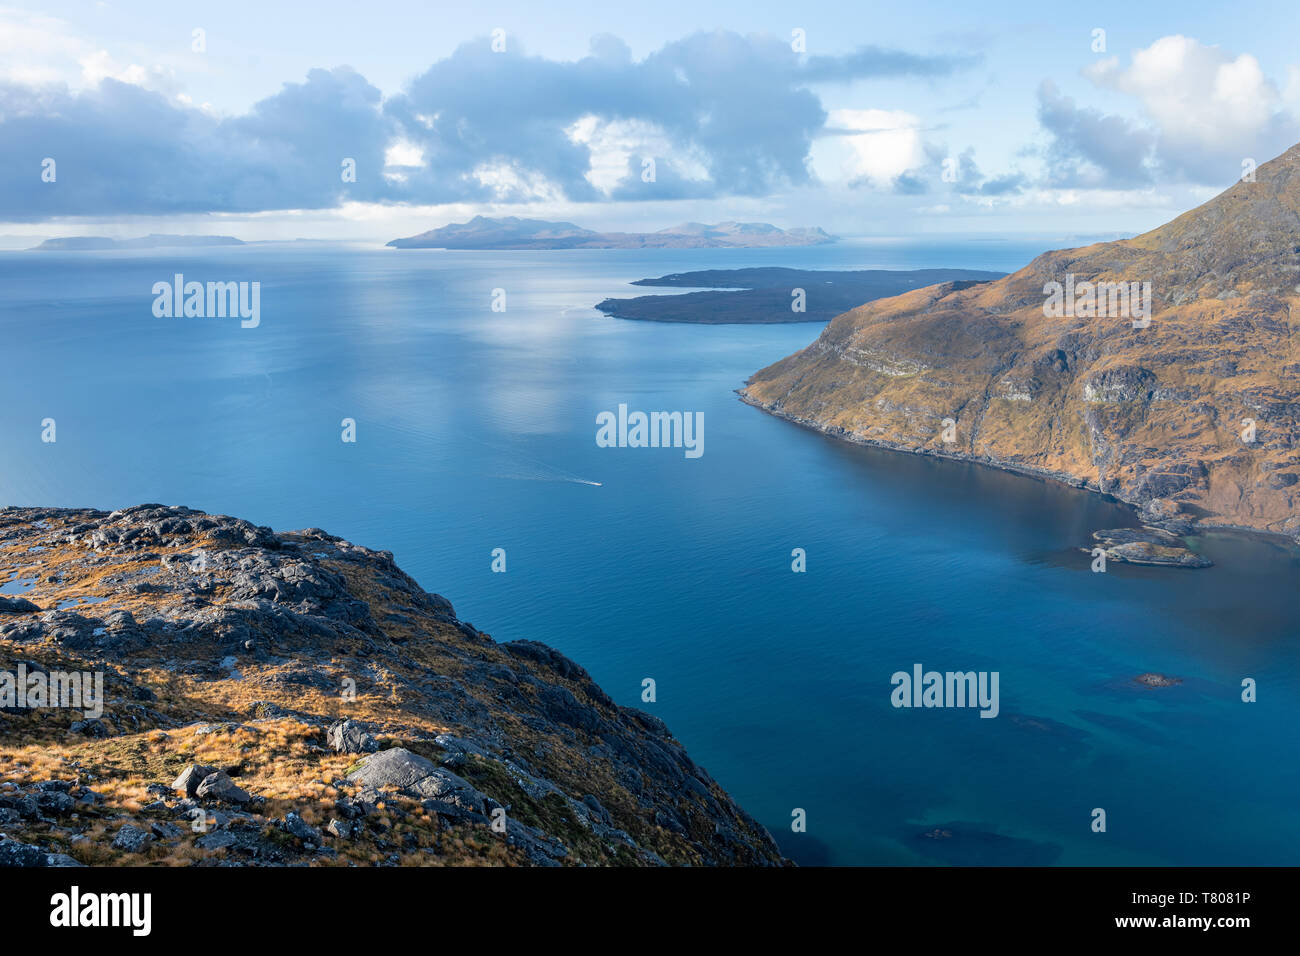 L'île de Soay vu du haut de Sgurr na ires sur l'île de Skye, Hébrides intérieures, Ecosse, Royaume-Uni, Europe Banque D'Images